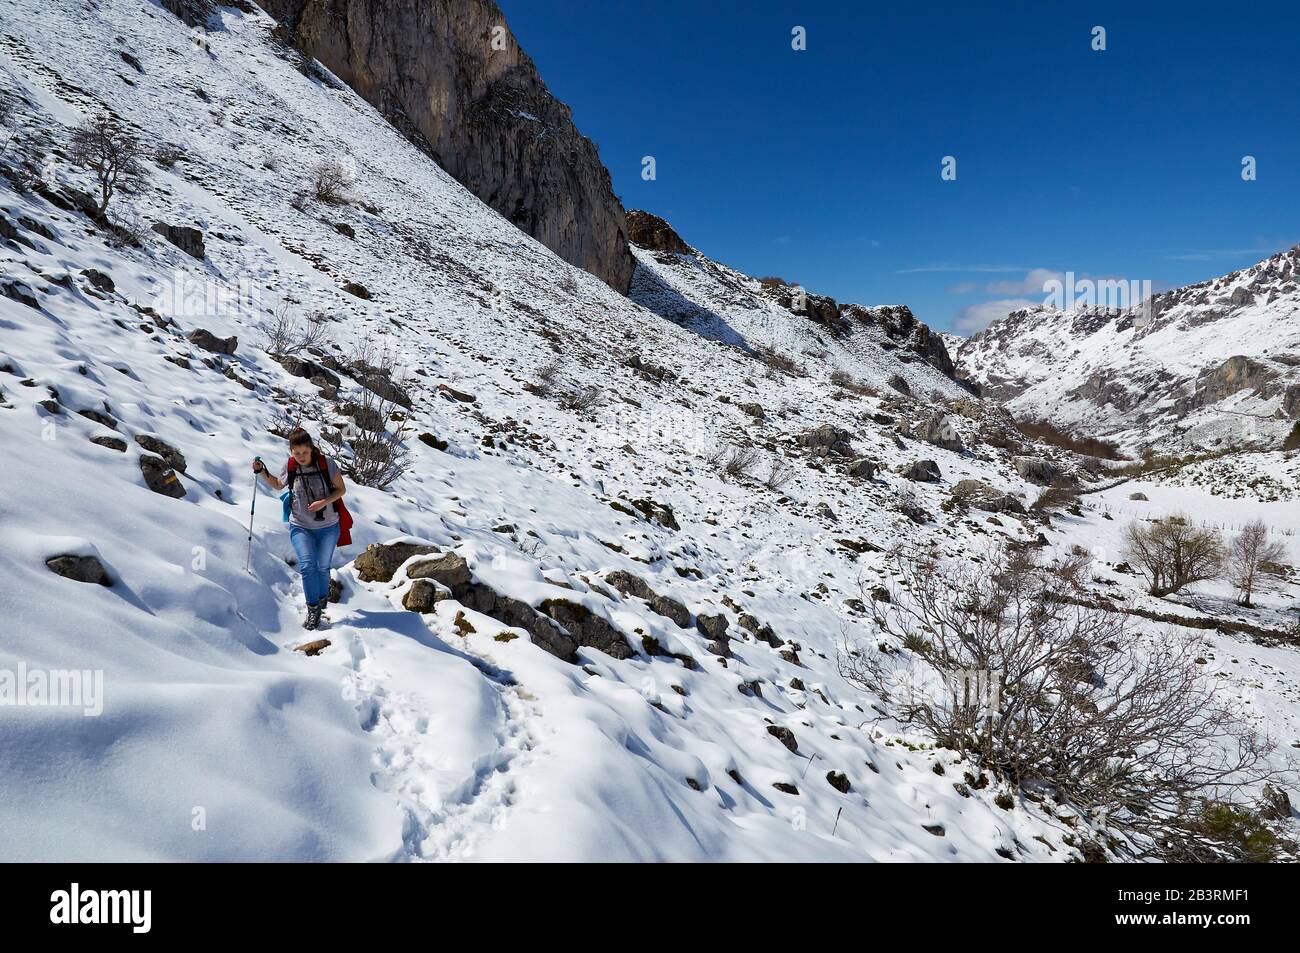 Randonneur féminin dans la piste de randonnée PR.AS-15.1 recouverte de neige avec des montagnes escarpées au loin (Valle del Lago, Soriedo Natural Park, Asturies, Espagne) Banque D'Images